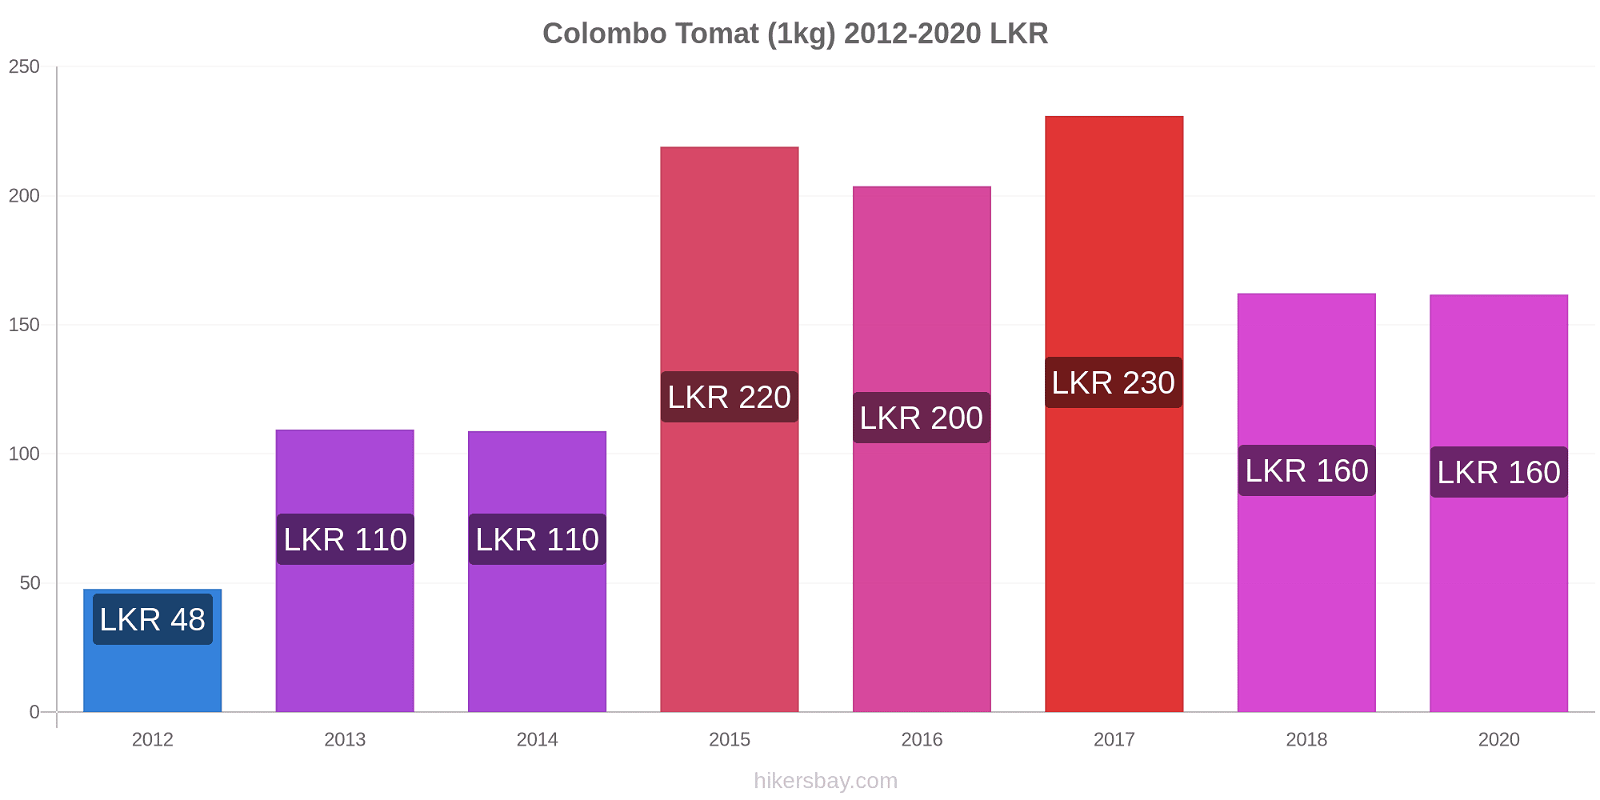 Colombo prisförändringar Tomat (1kg) hikersbay.com